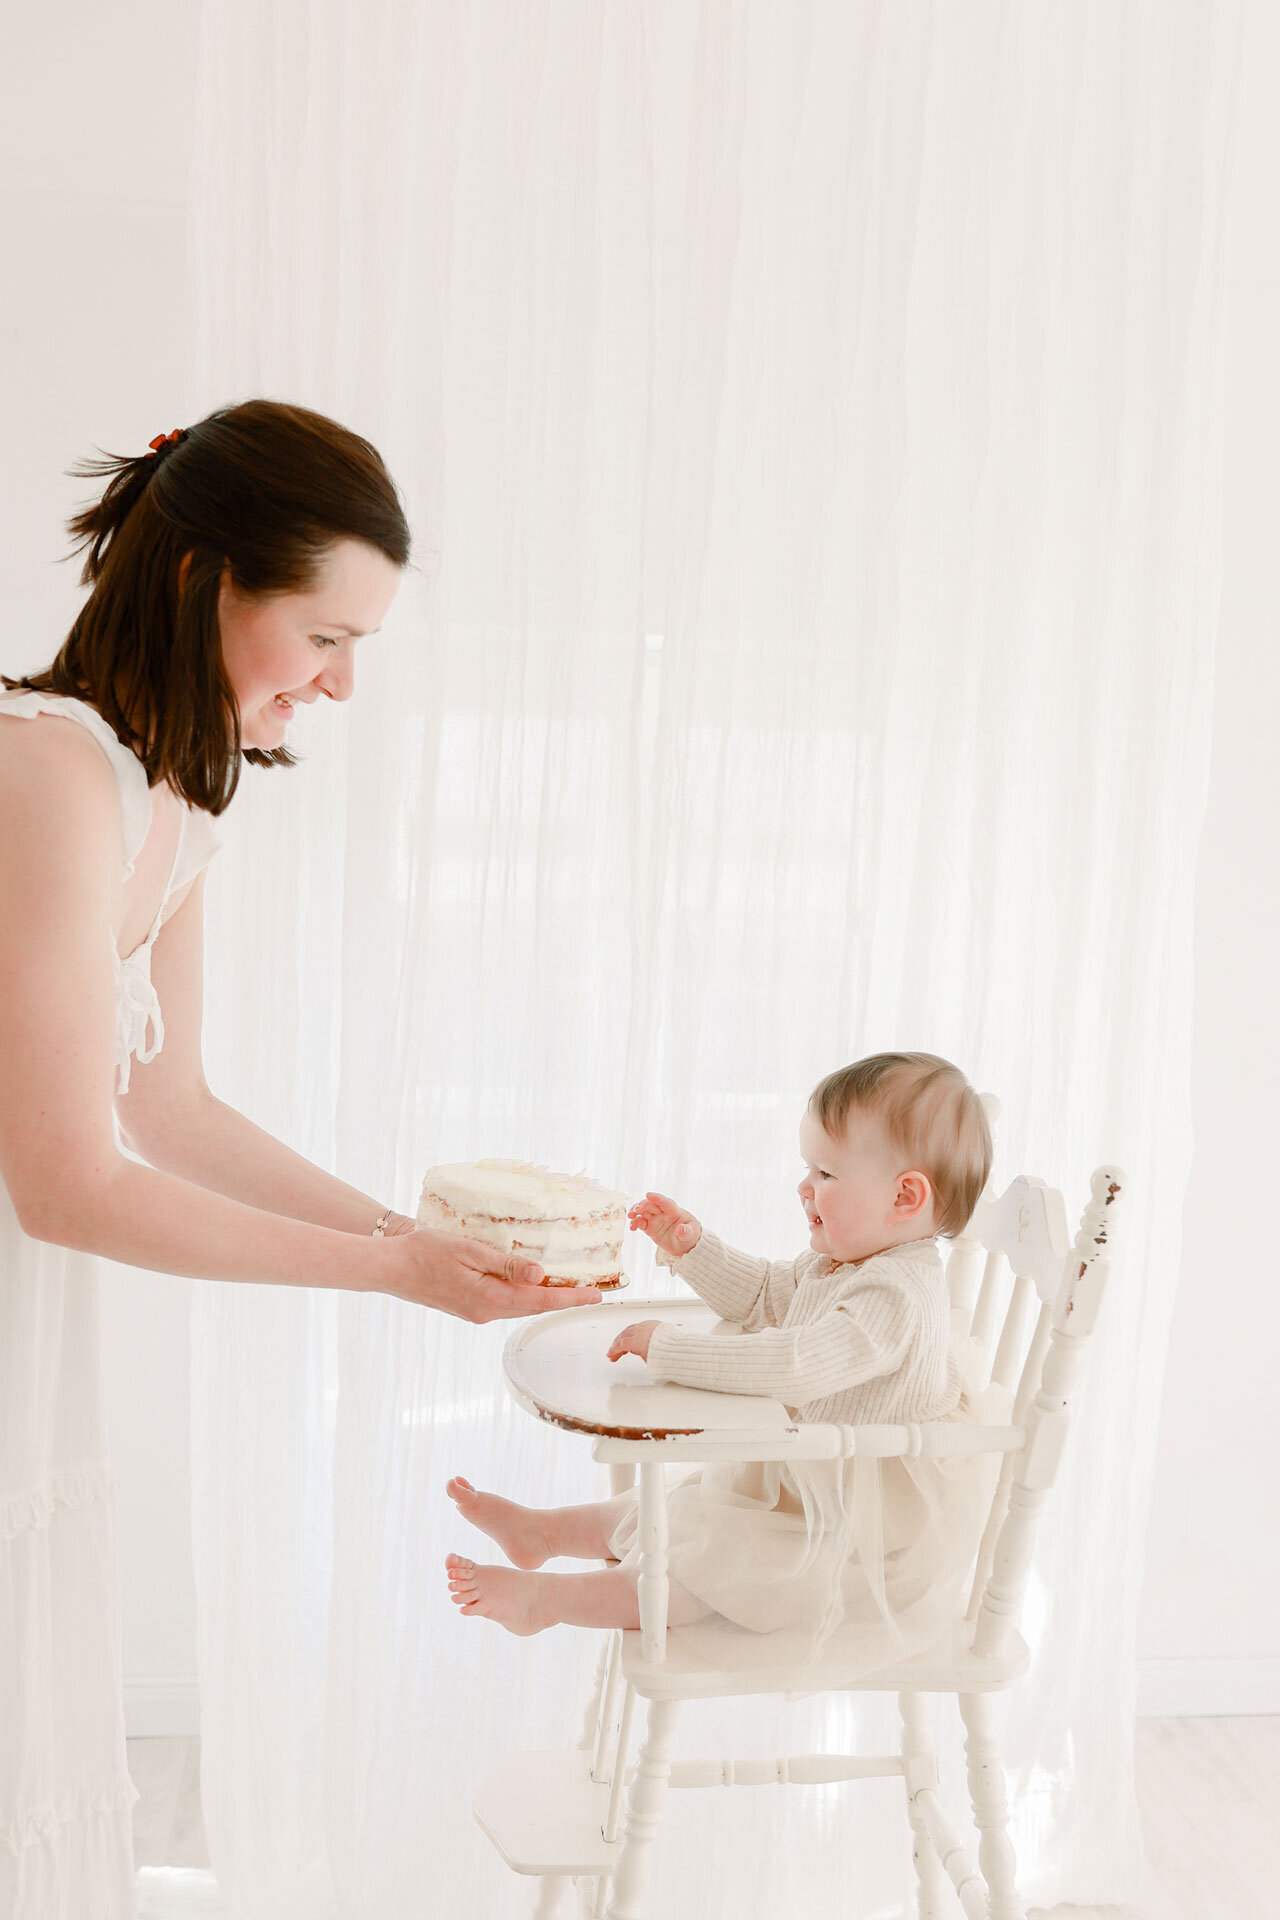 Baby Fotoshooting von Babys erstem Geburtstag. Fröhliches Baby in einem Hochstuhl freut sich auf den Kuchen den Mama ihm reicht.